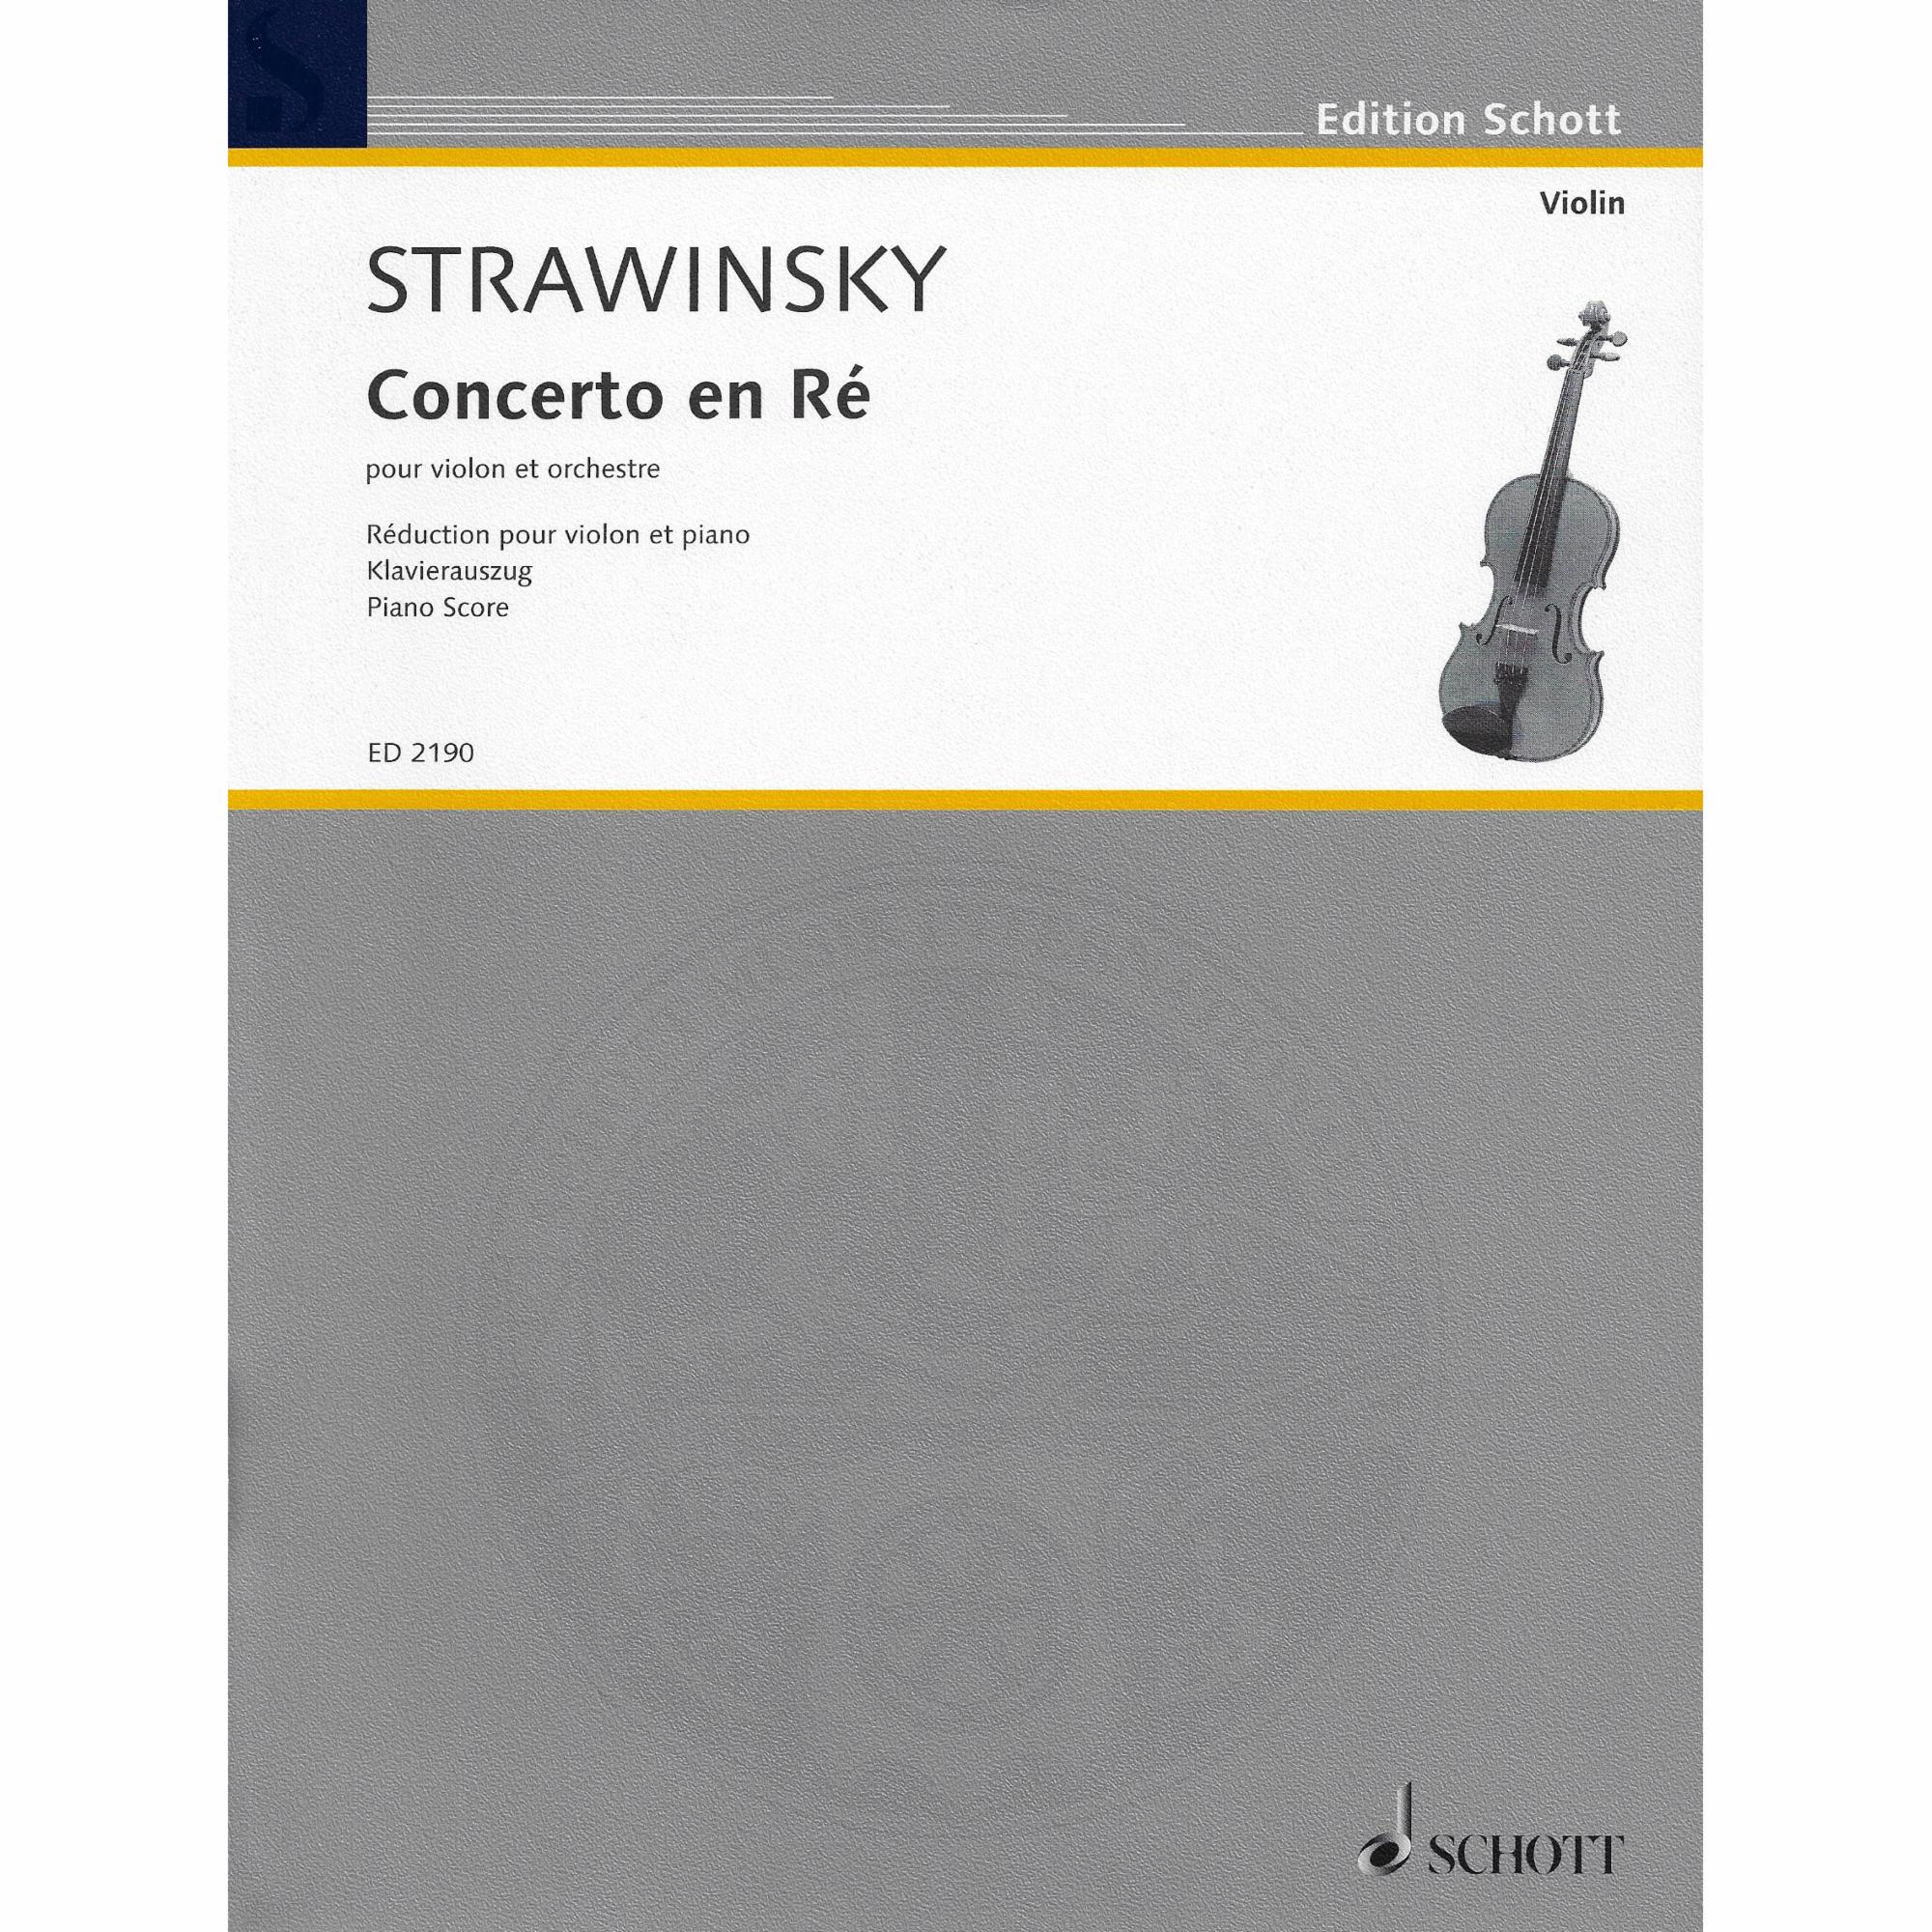 Stravinsky -- Violin Concerto in D Major